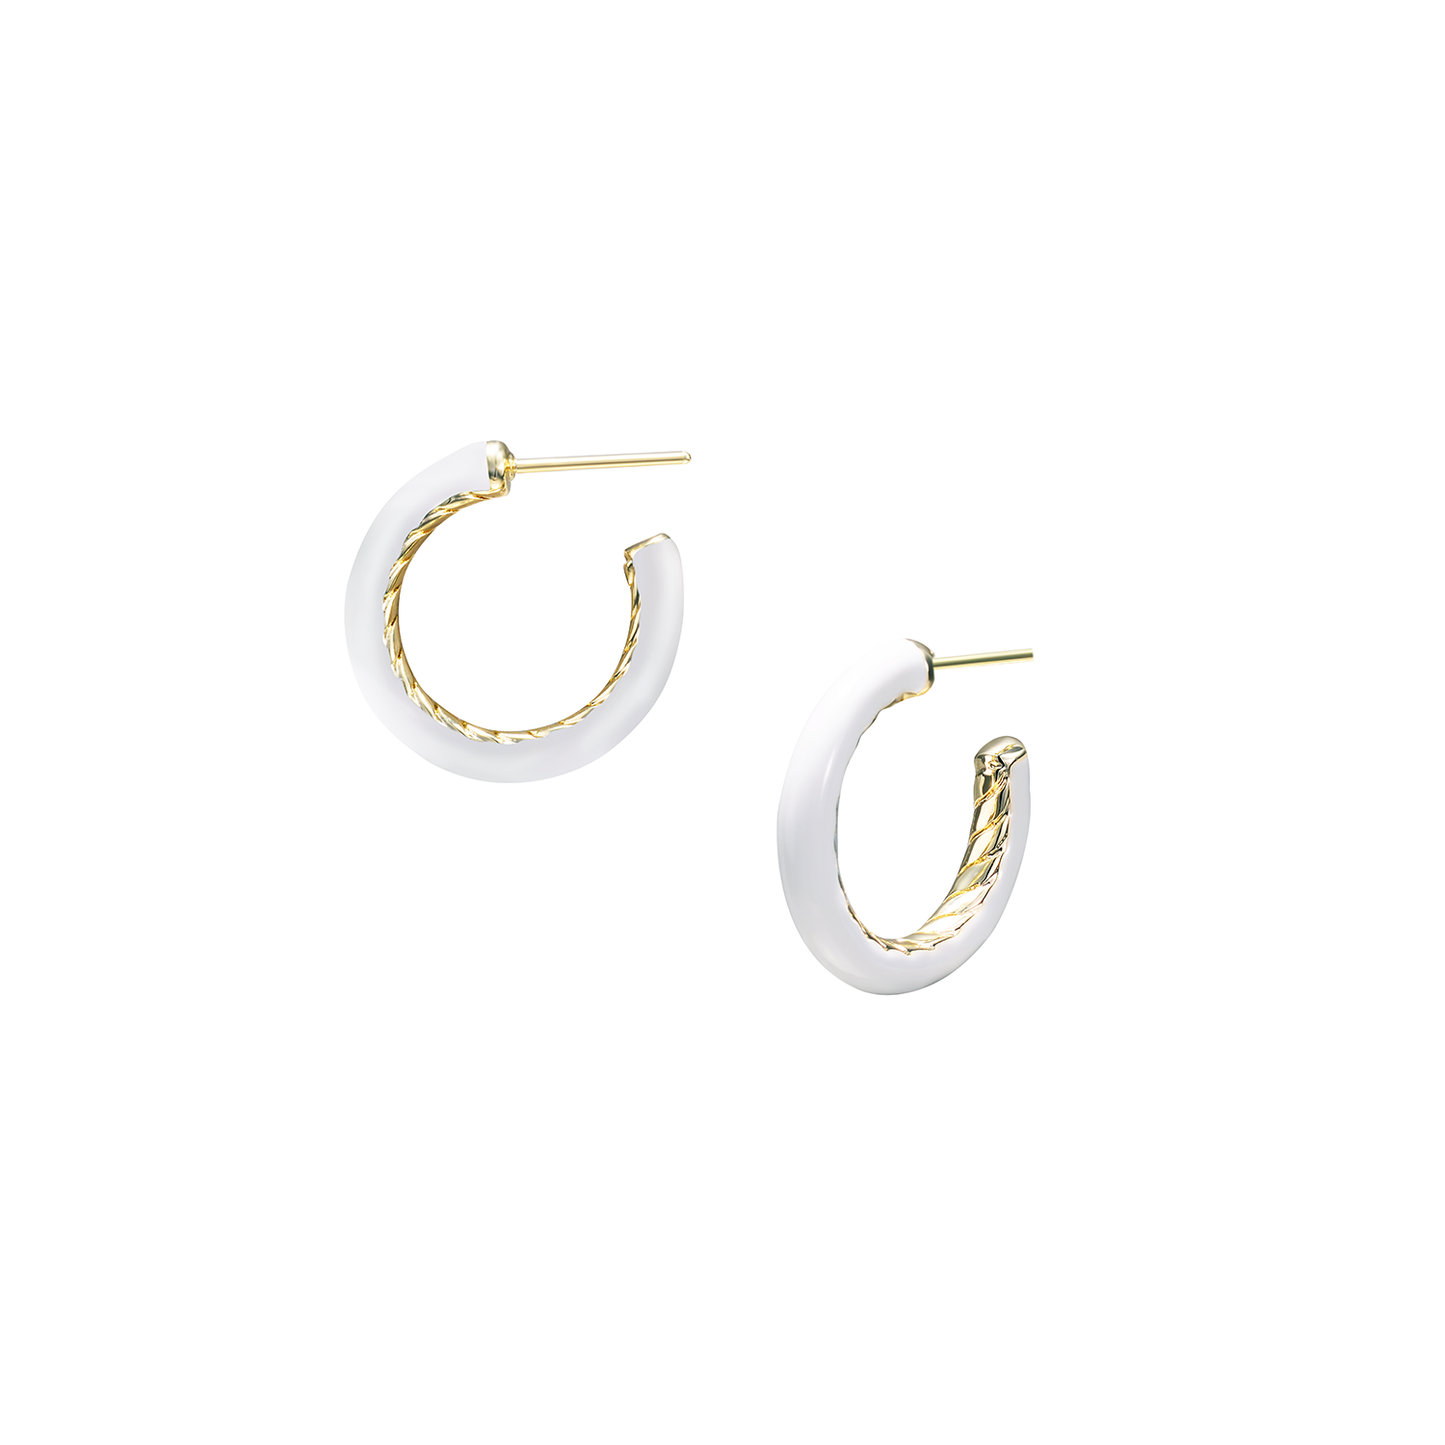 Natalie Wood Design Eclipse Hoop Earrings - White Enamel